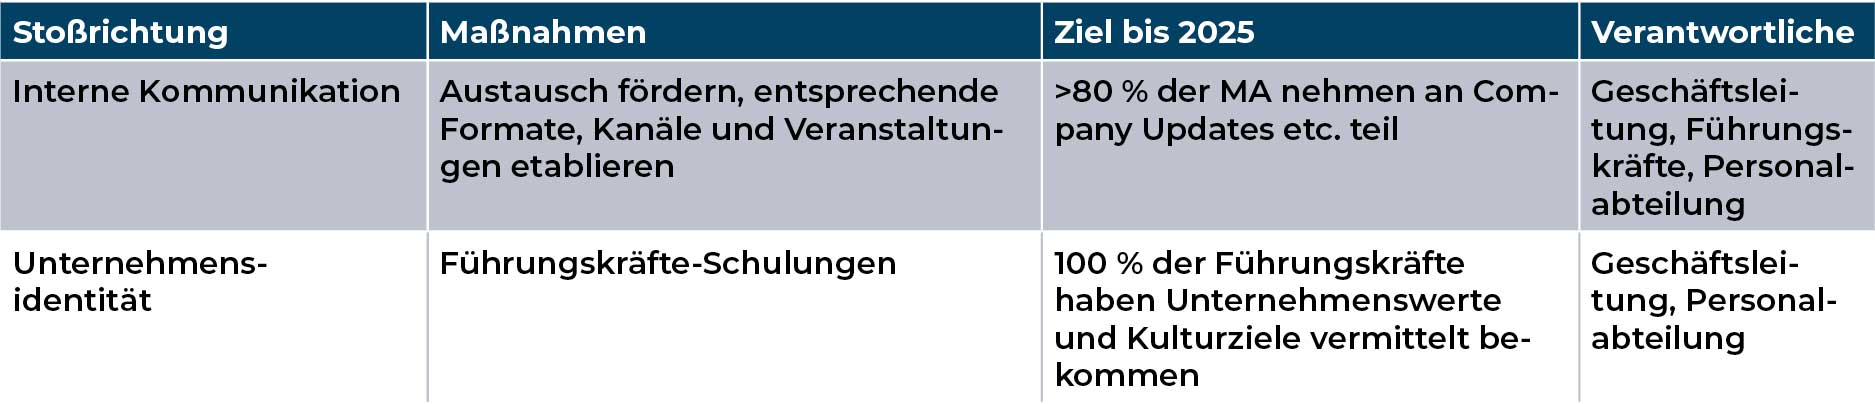 Mediengruppe Wiener Zeitung Nachhaltigkeitsbericht 2023 - mgwz_soziales_Stabile-Beschäftigungsverhältnisse-modal